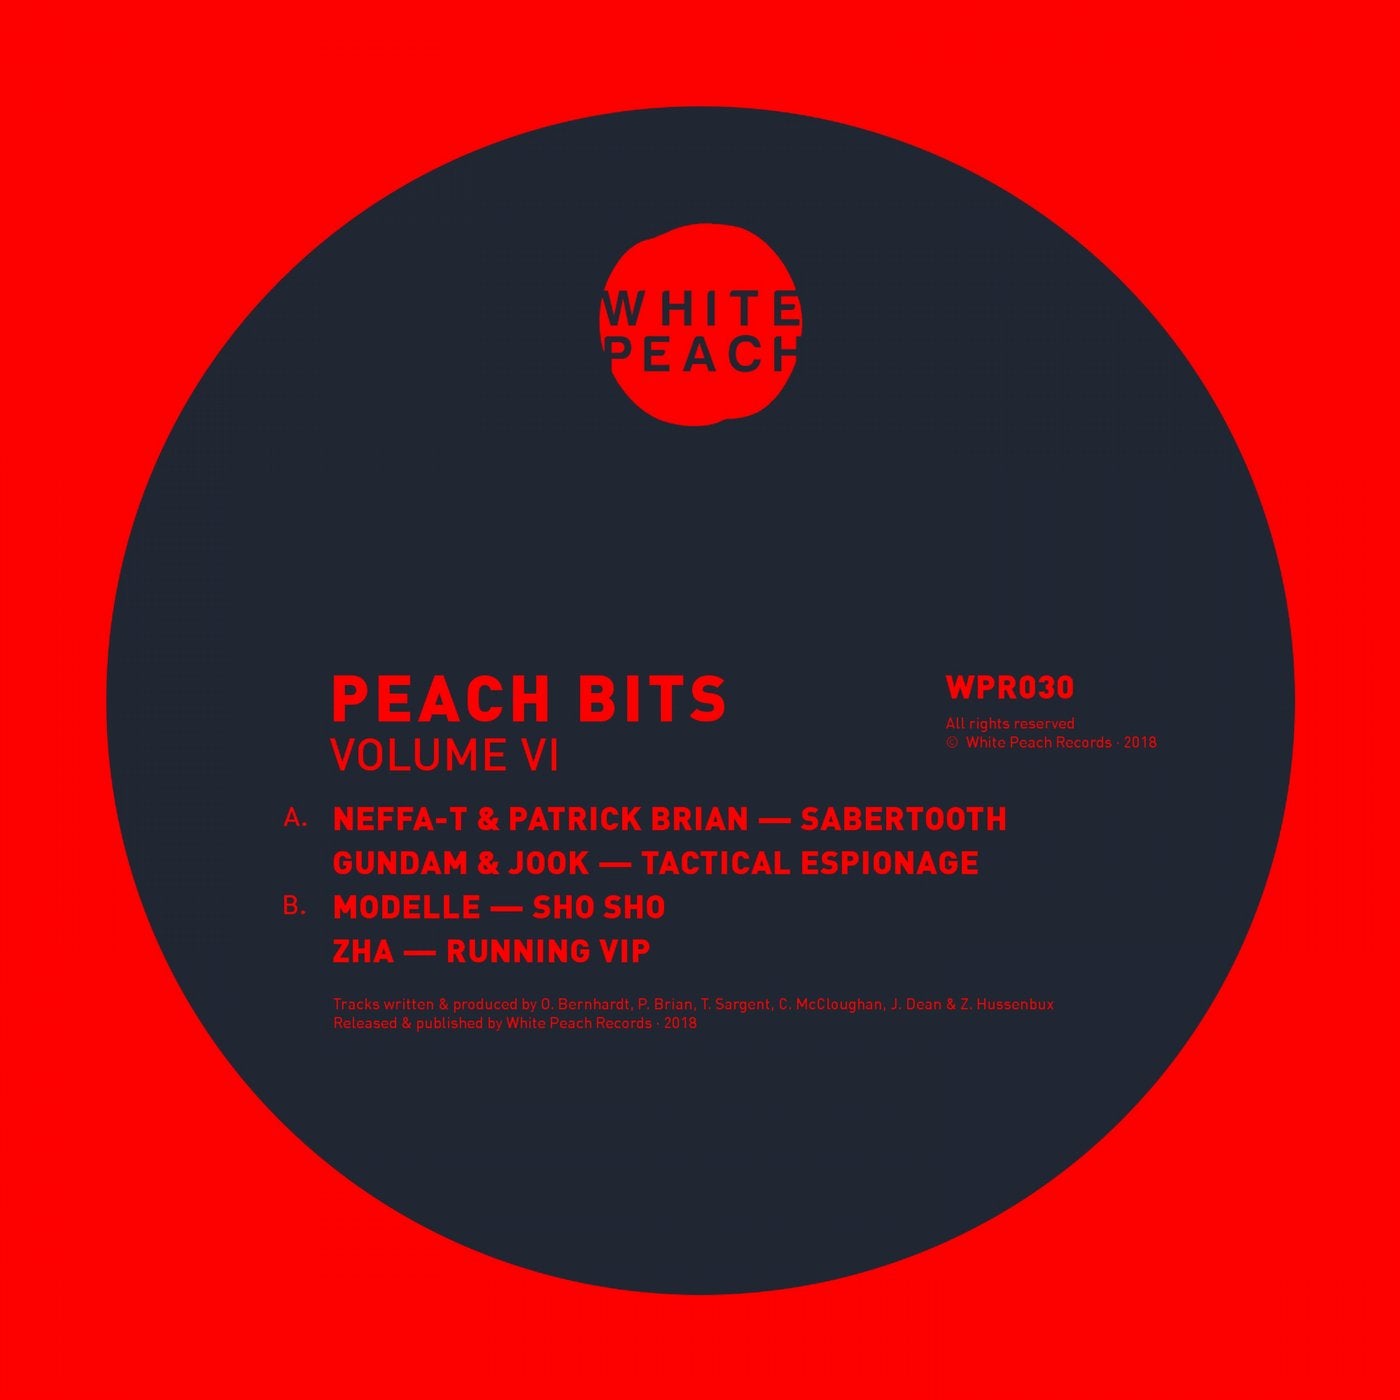 Peach Bits Vol 6